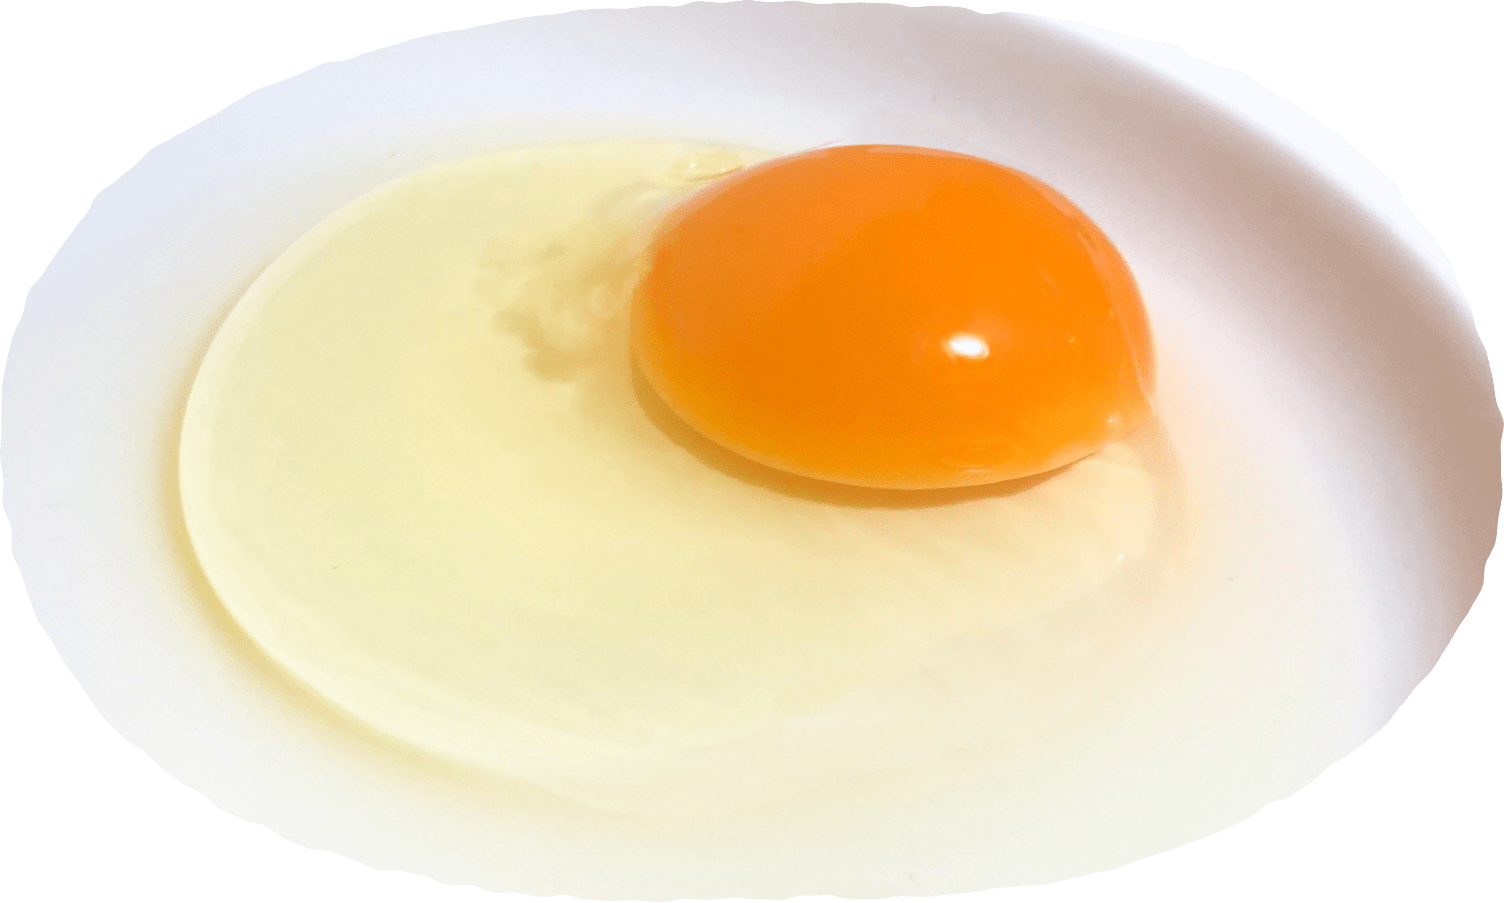 新鮮な割った卵のイメージ